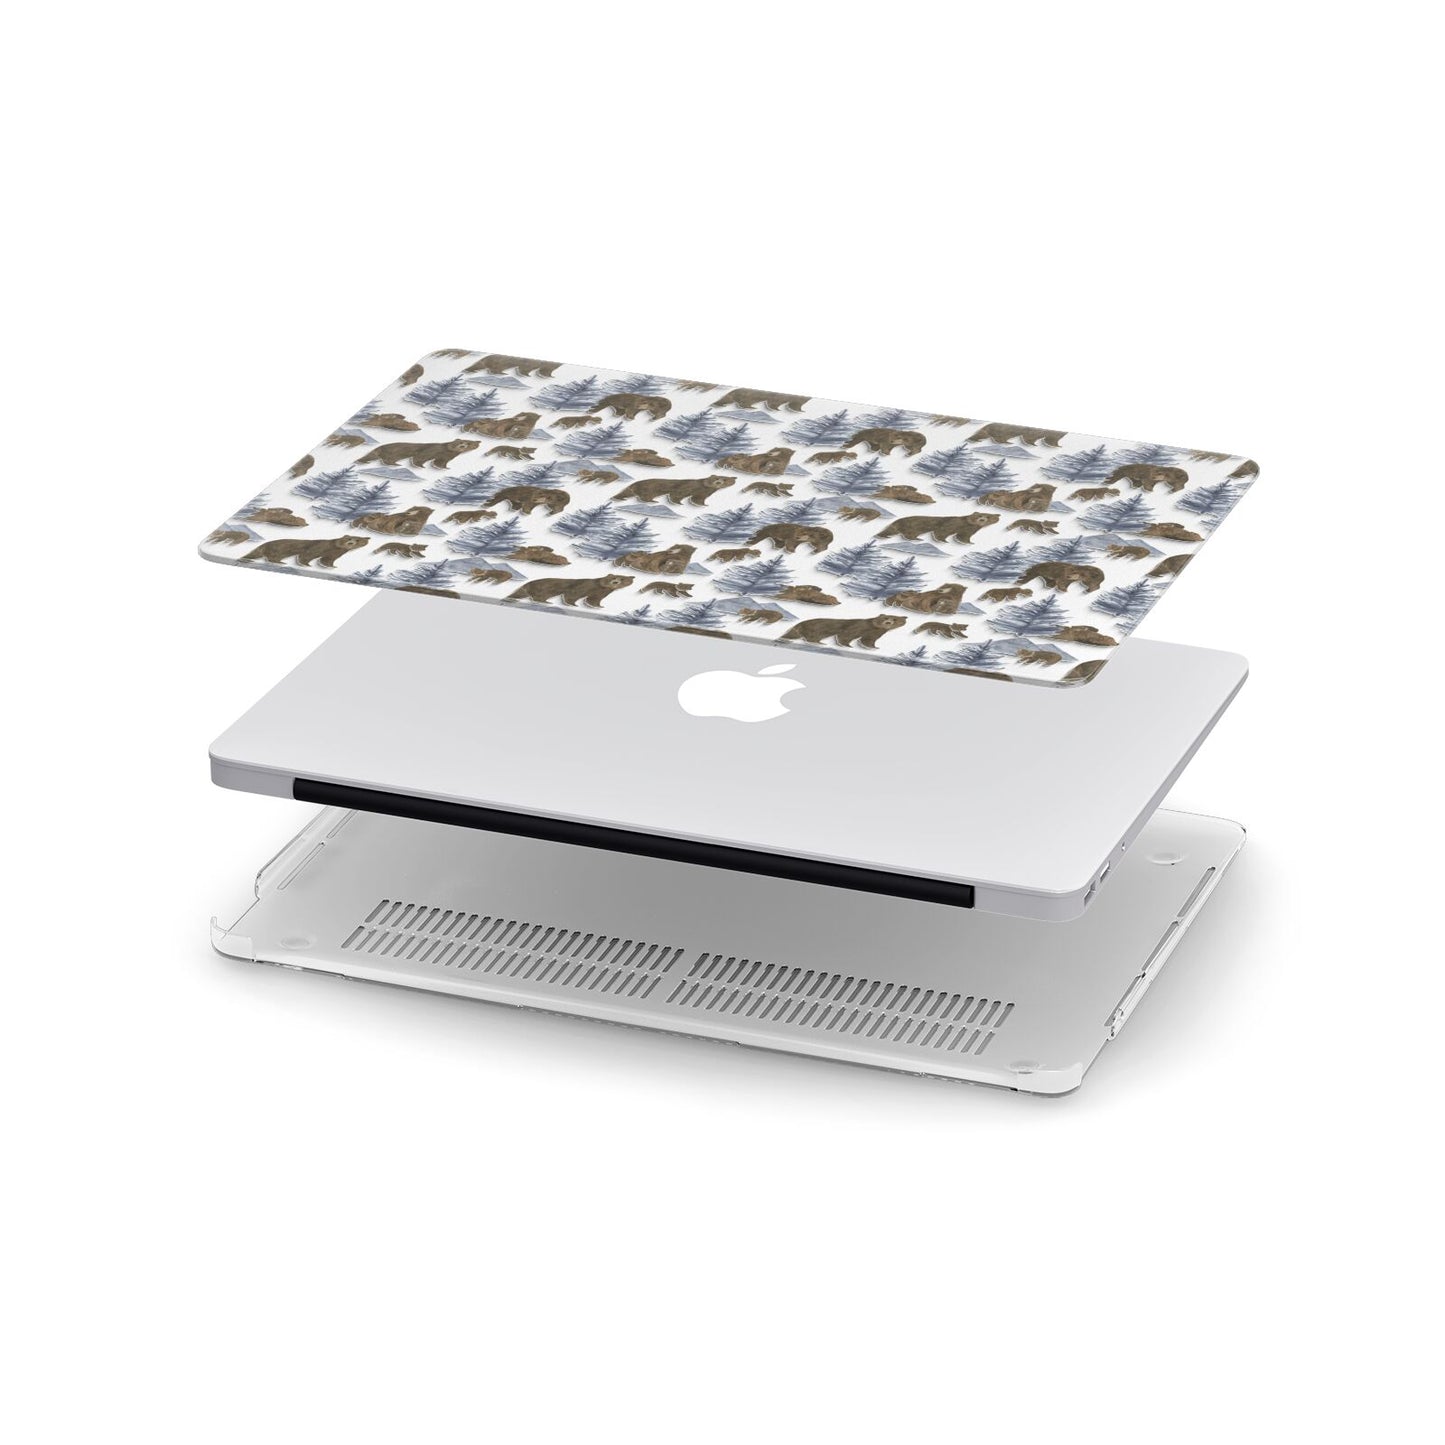 Brown Bear Apple MacBook Case in Detail